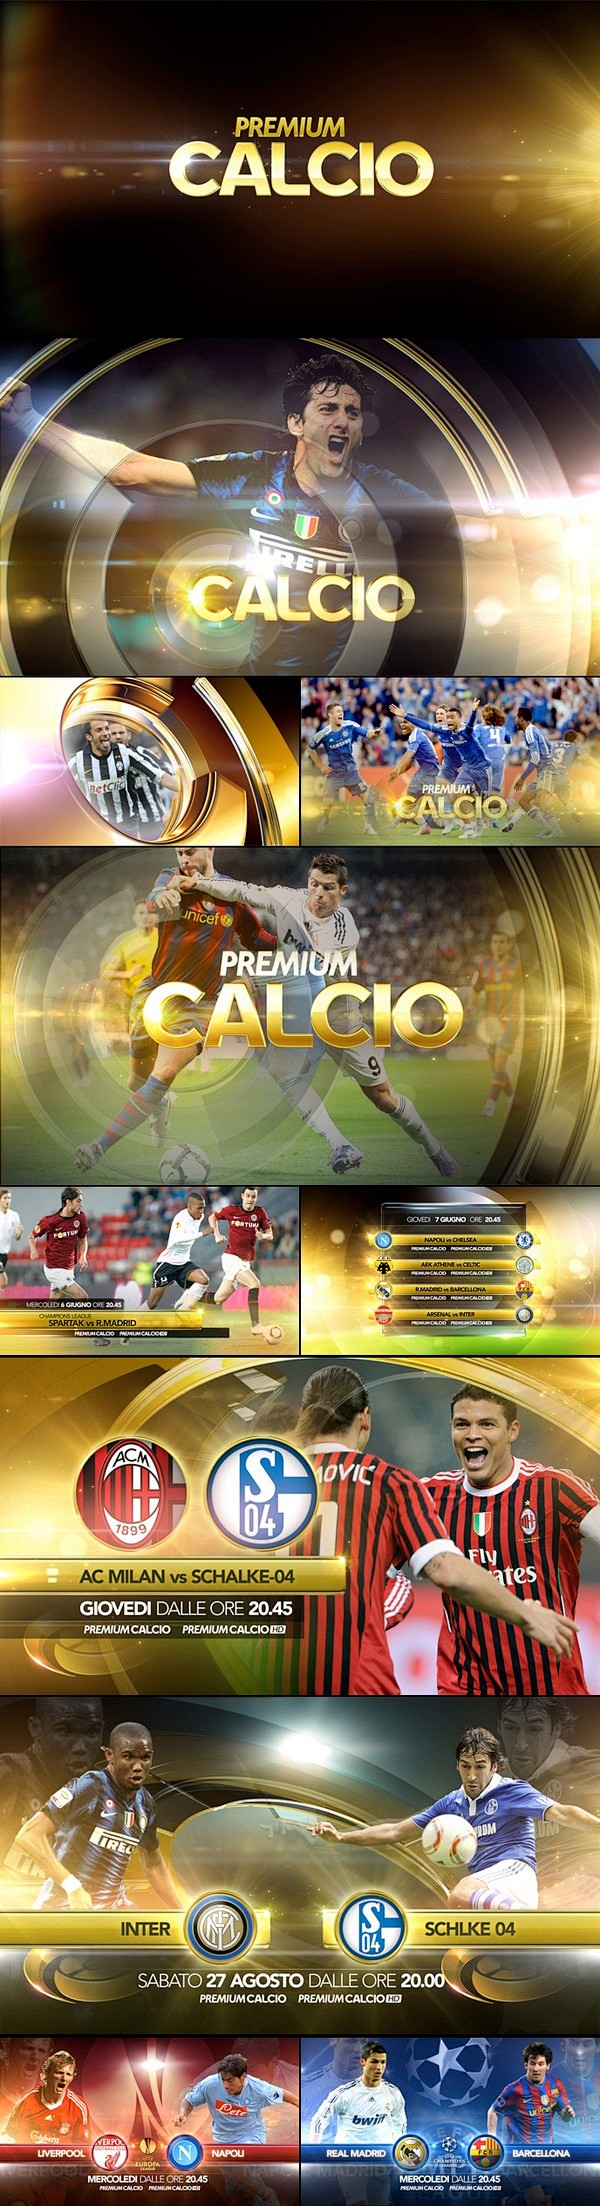 Premium calcio promo...